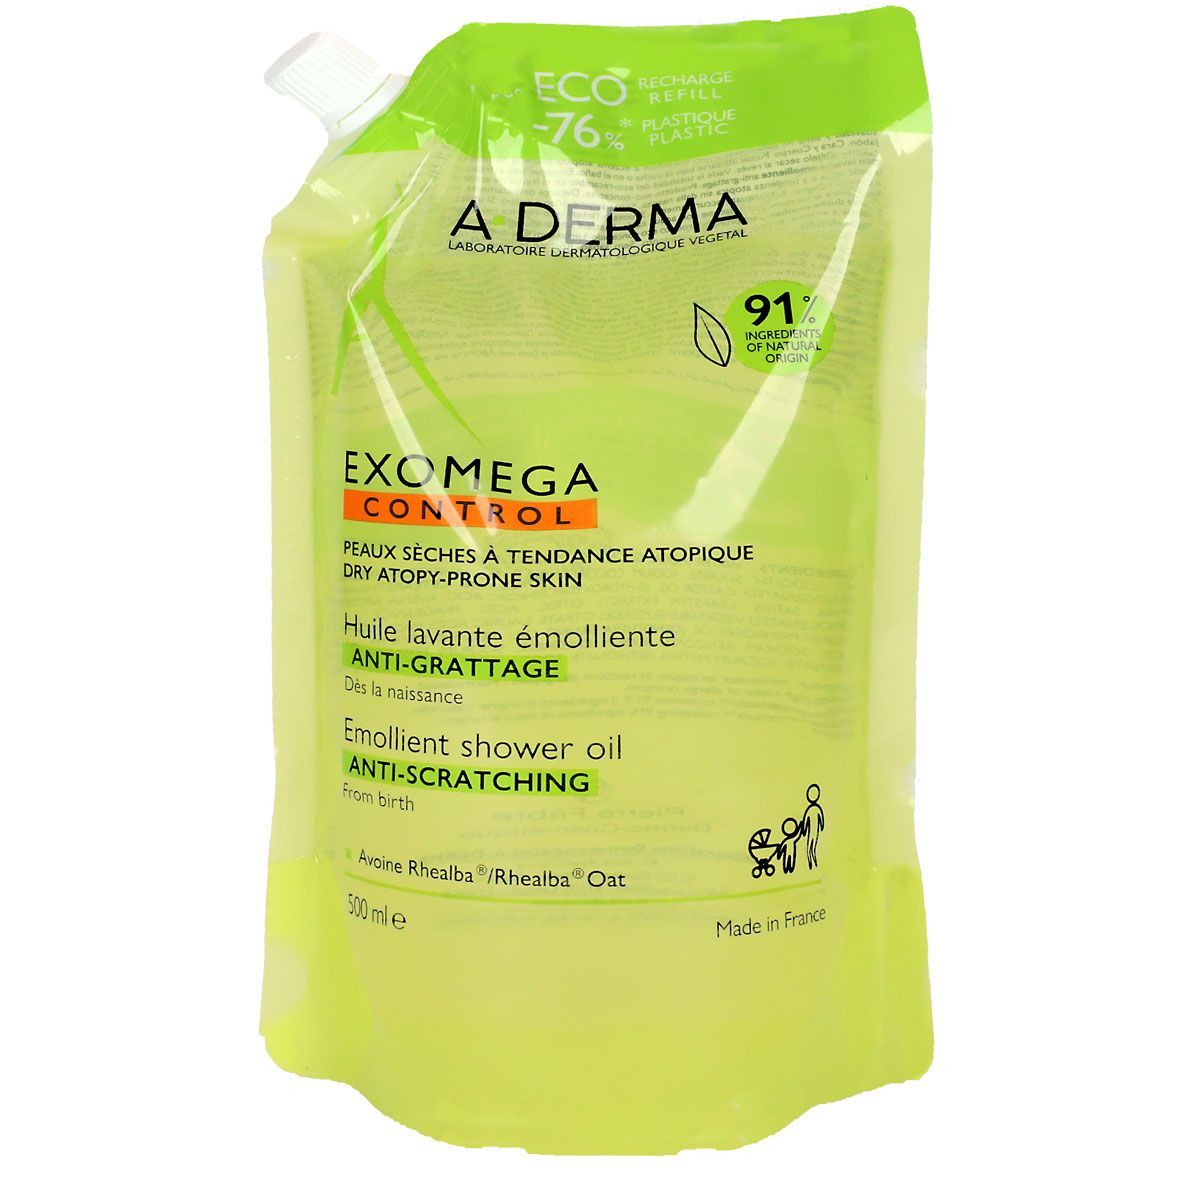 A-DERMA Exomega Control huile lavante émolliente - Parapharmacie